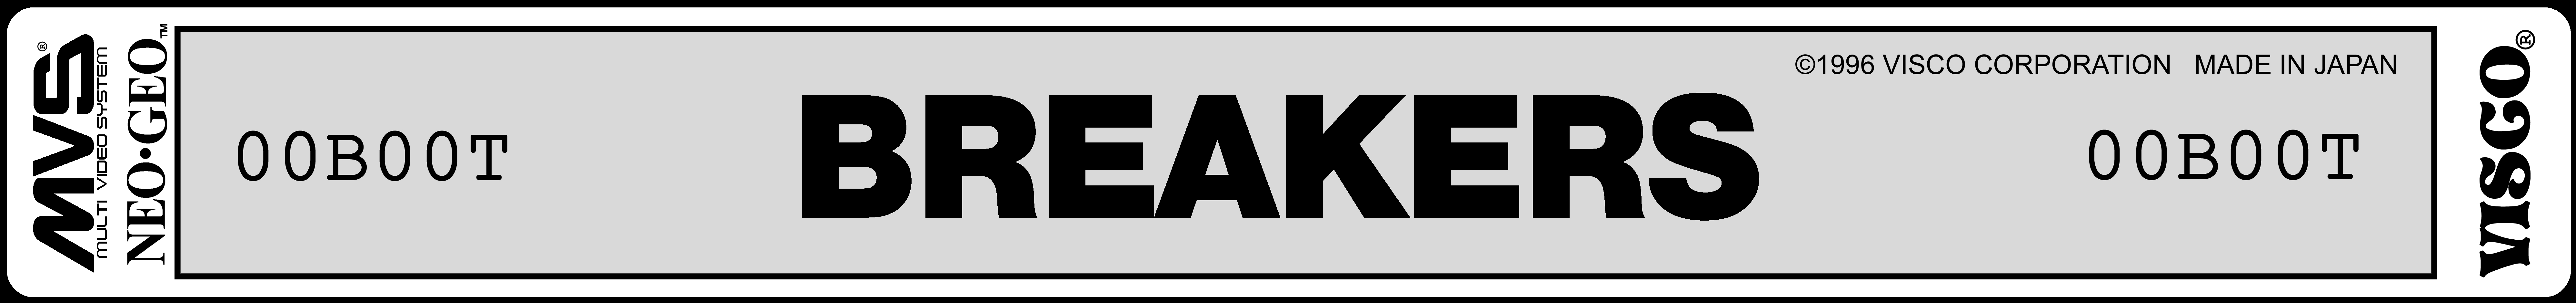 Breakers bootleg1 label.jpg